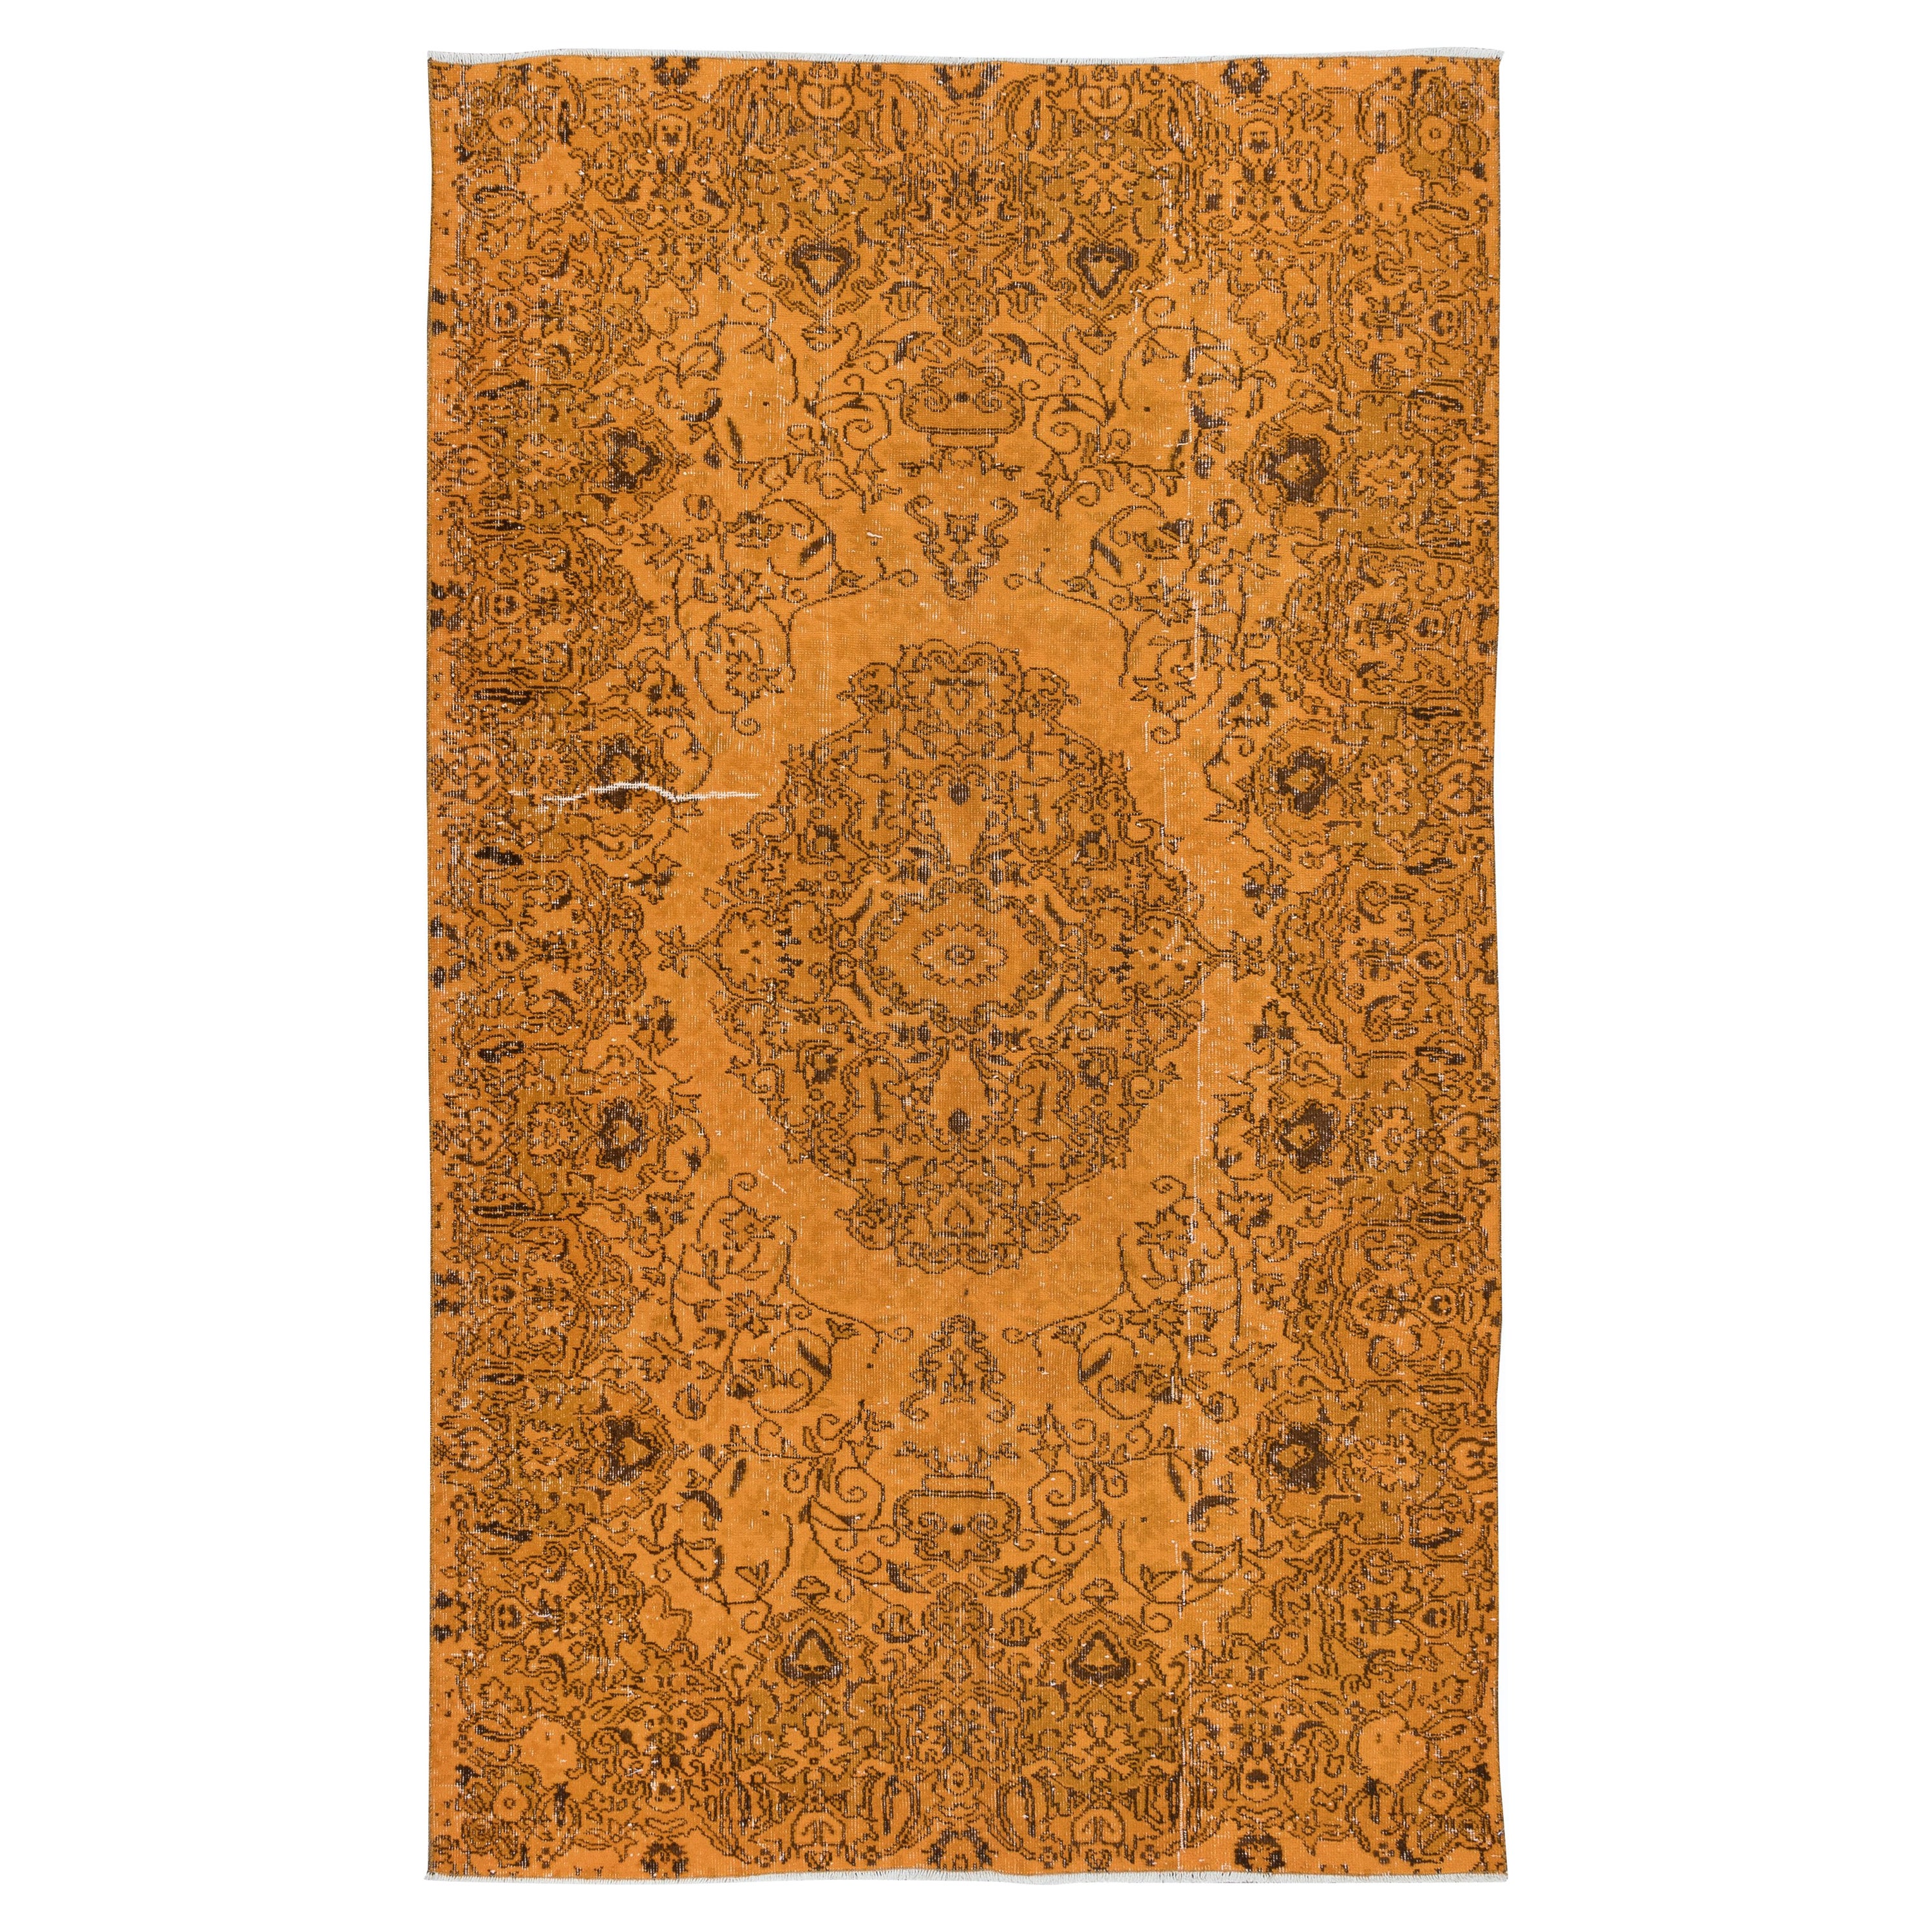 5.2x8.4 Ft Handmade Orange Area Rug from Turkey, Modern Medallion Design Carpet (tapis à motifs de médaillons)